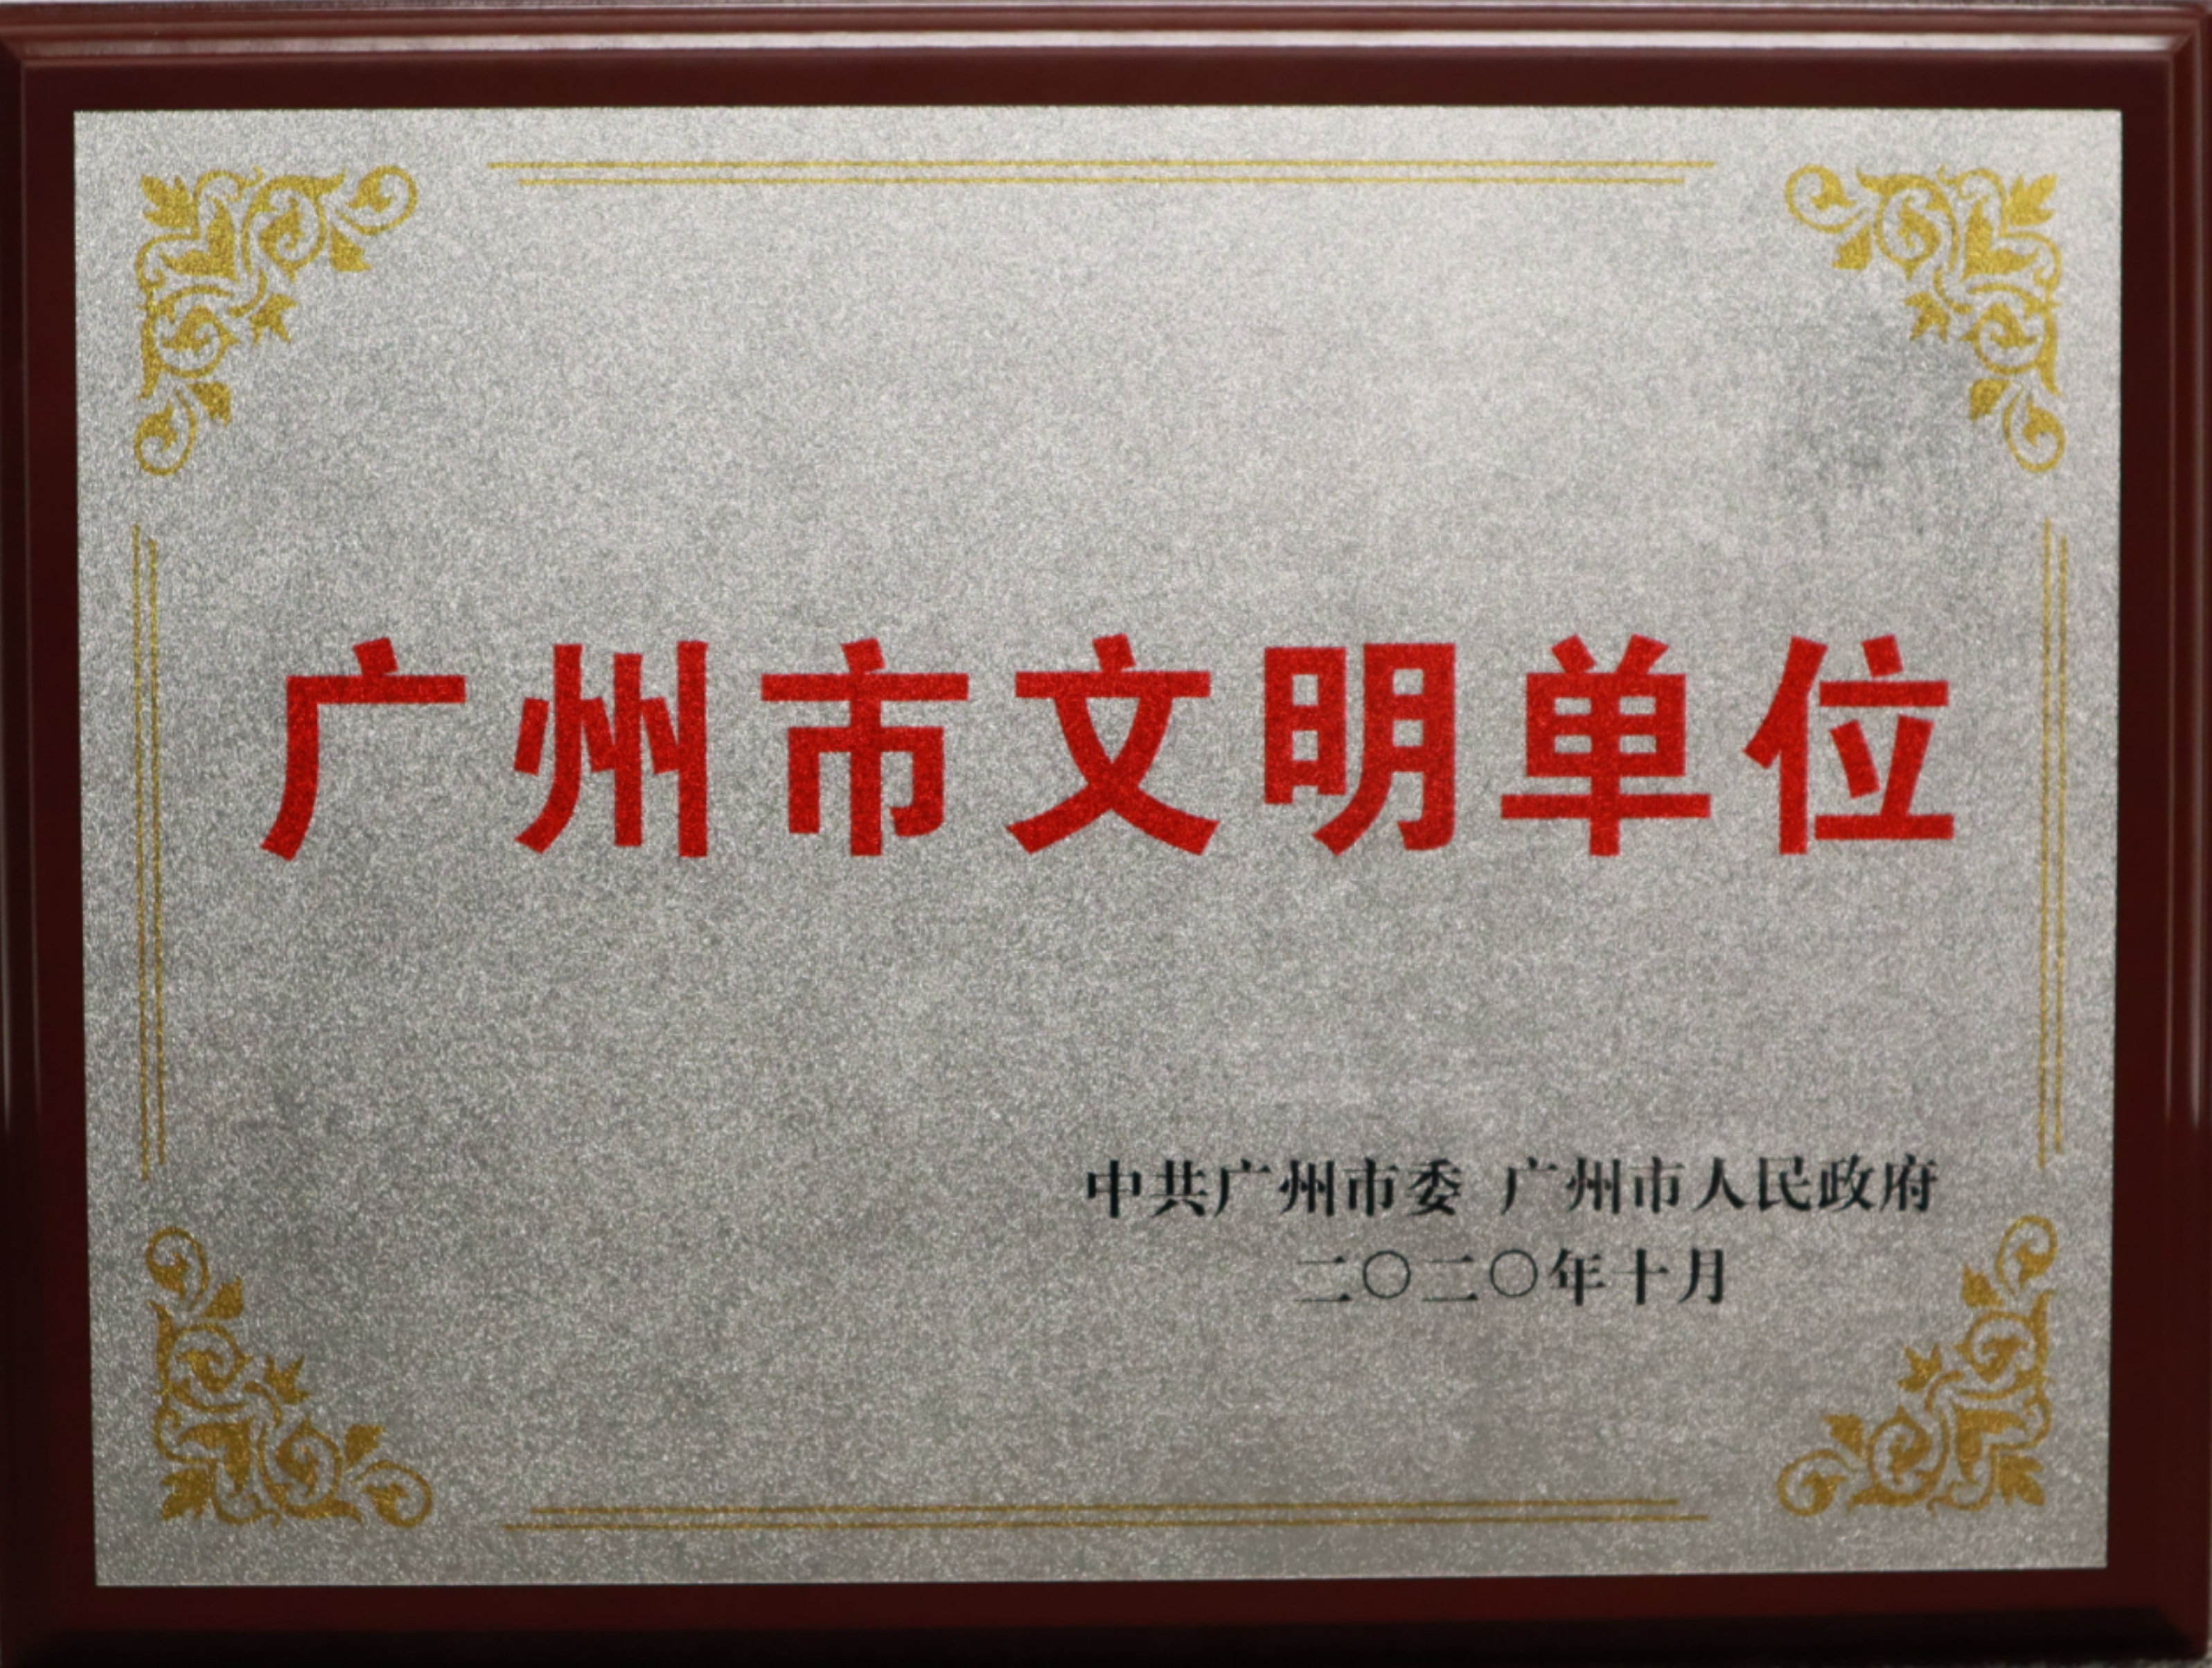 热烈祝贺广州酒家集团利口福食品有限公司荣获 “广州市文明单位”称号